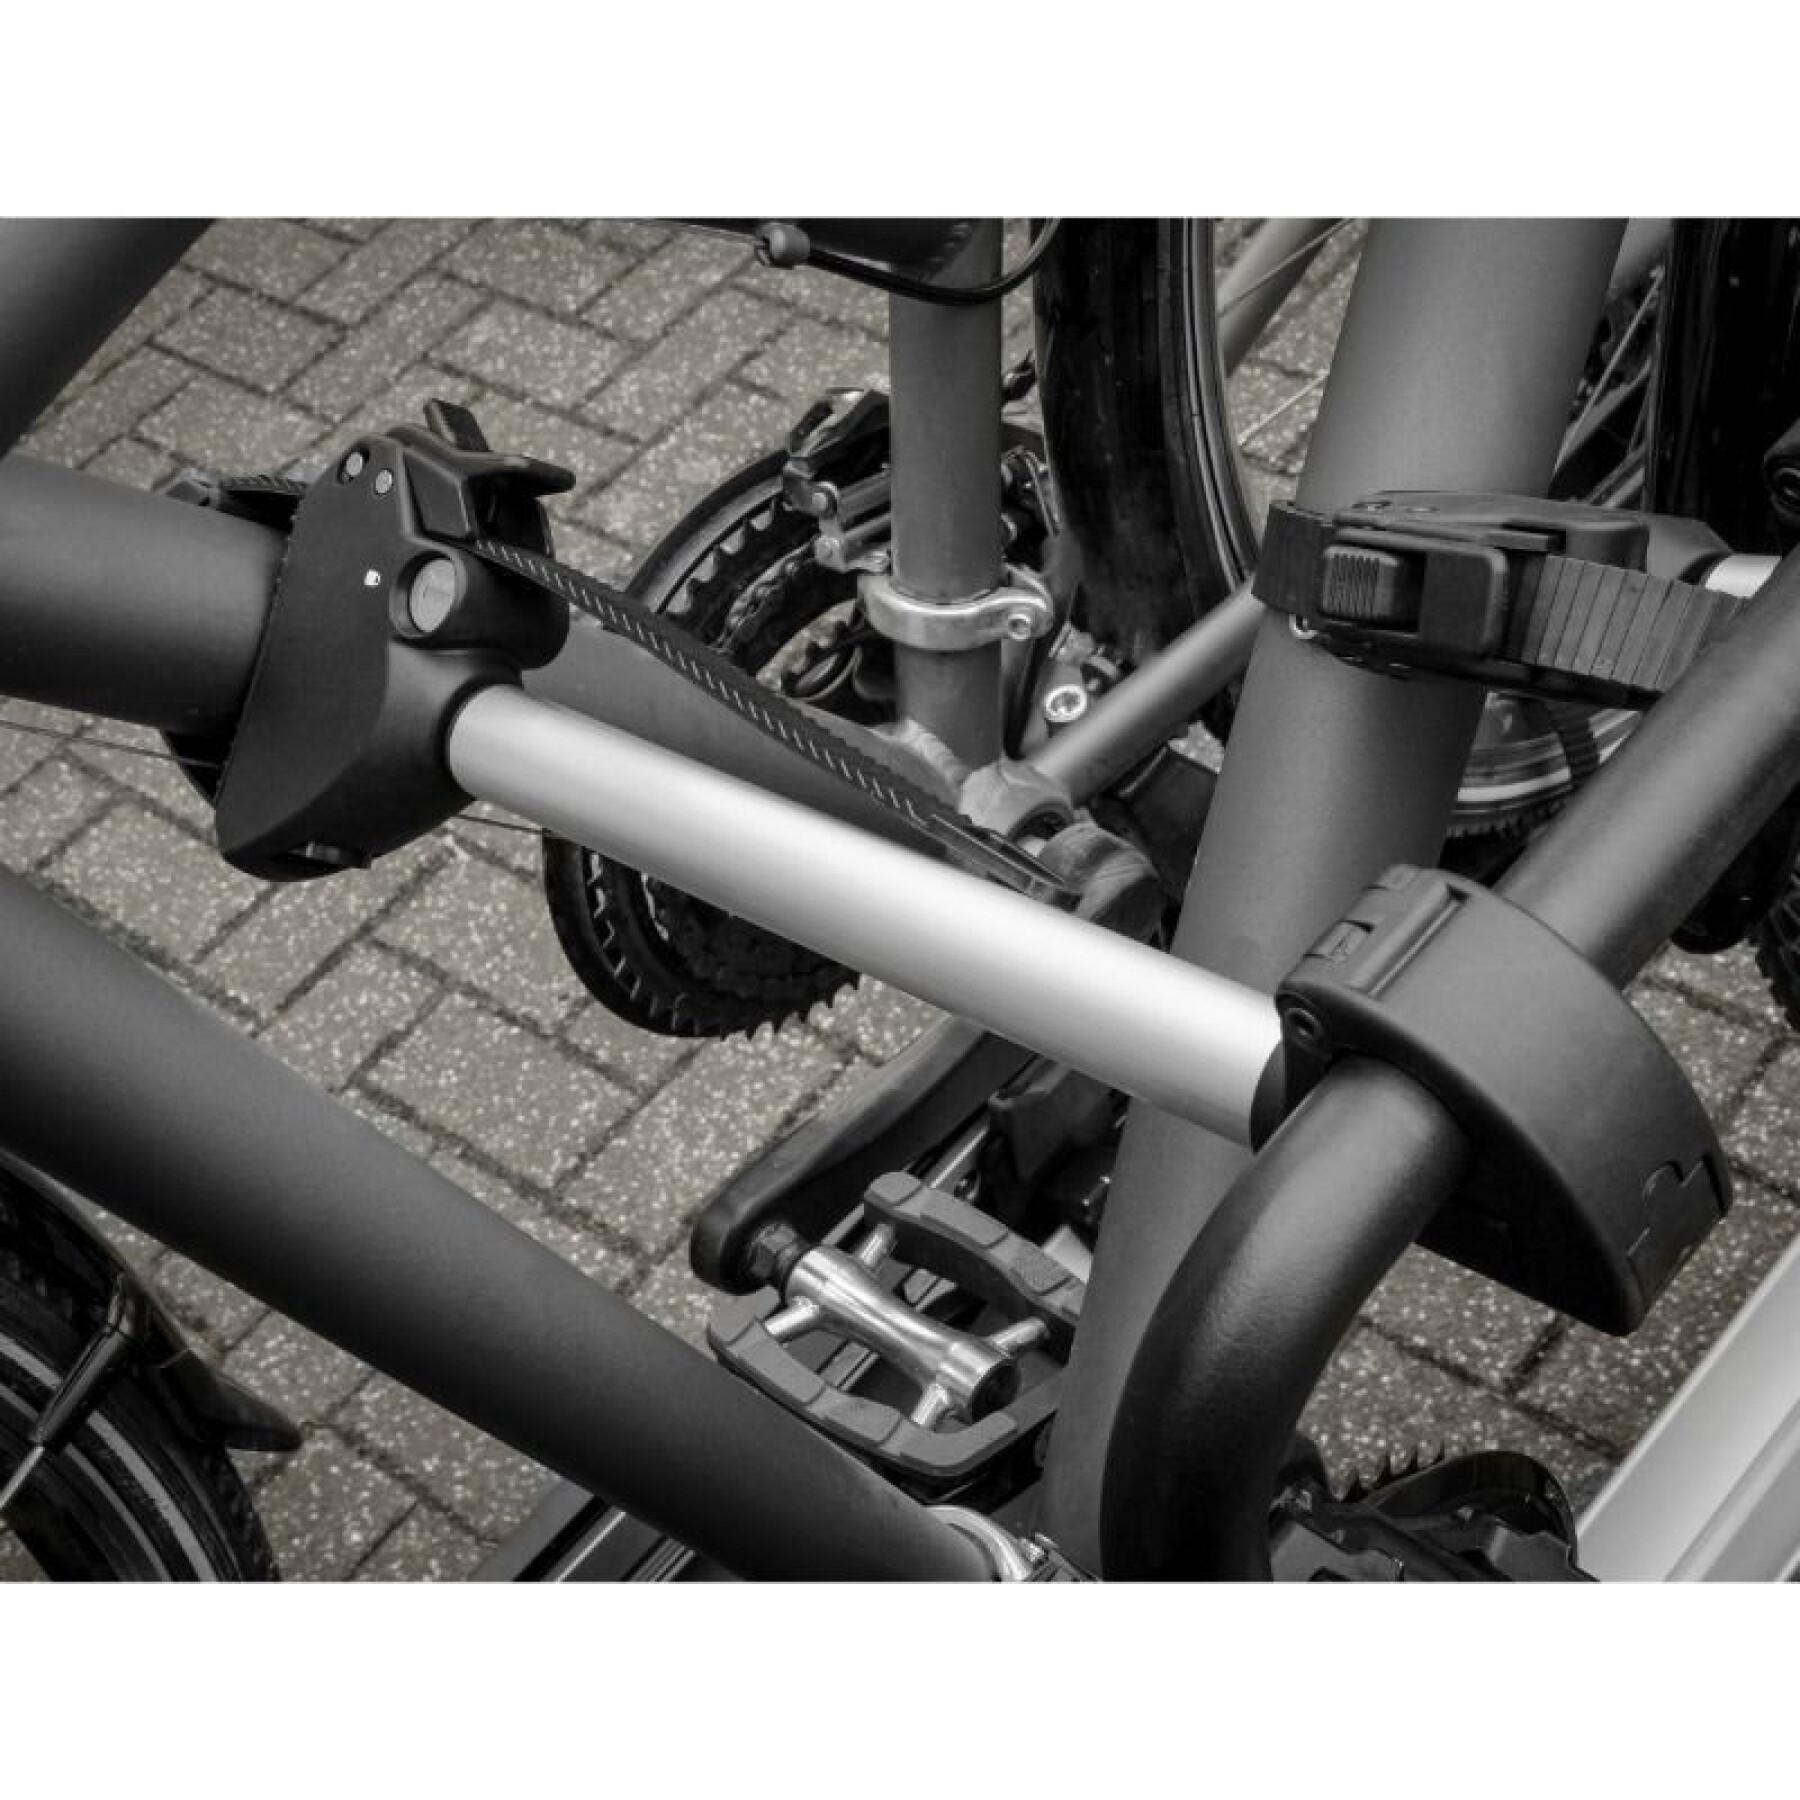 Fixer Arm Rahmen für Fahrradträger Plattform mit Schloss (U-Bügel) für Crow basic-amber und andere Marken Peruzzo 32 cm